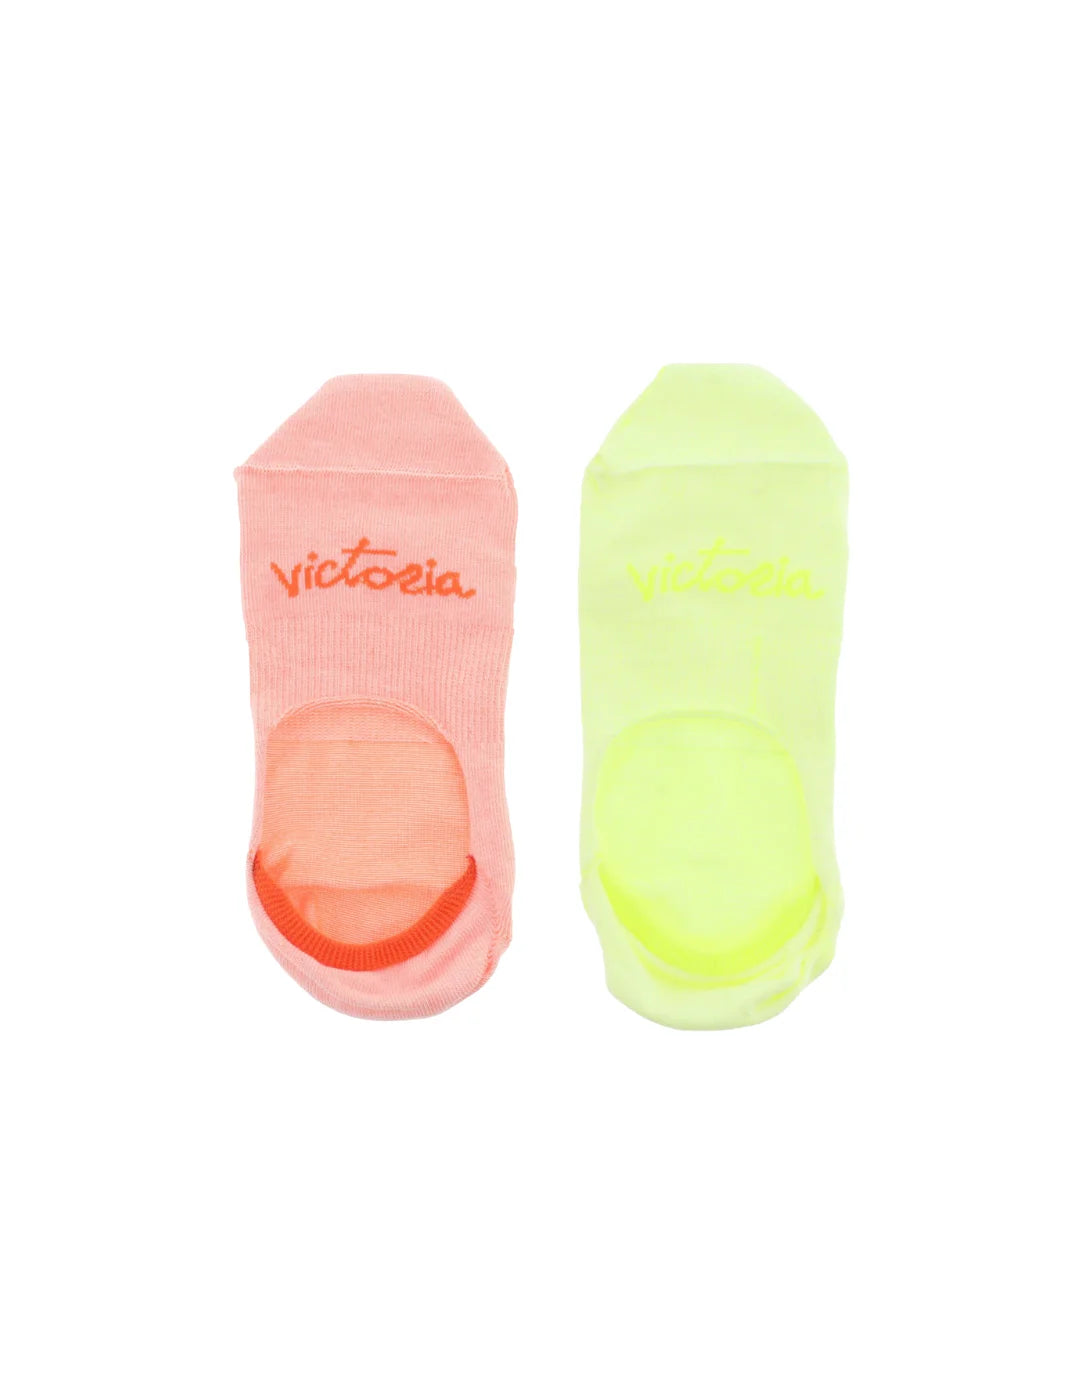 Calcetines Pinkies Fluor Victoria Amarillo-Naranja Pack 2 | Bicos de Fío 